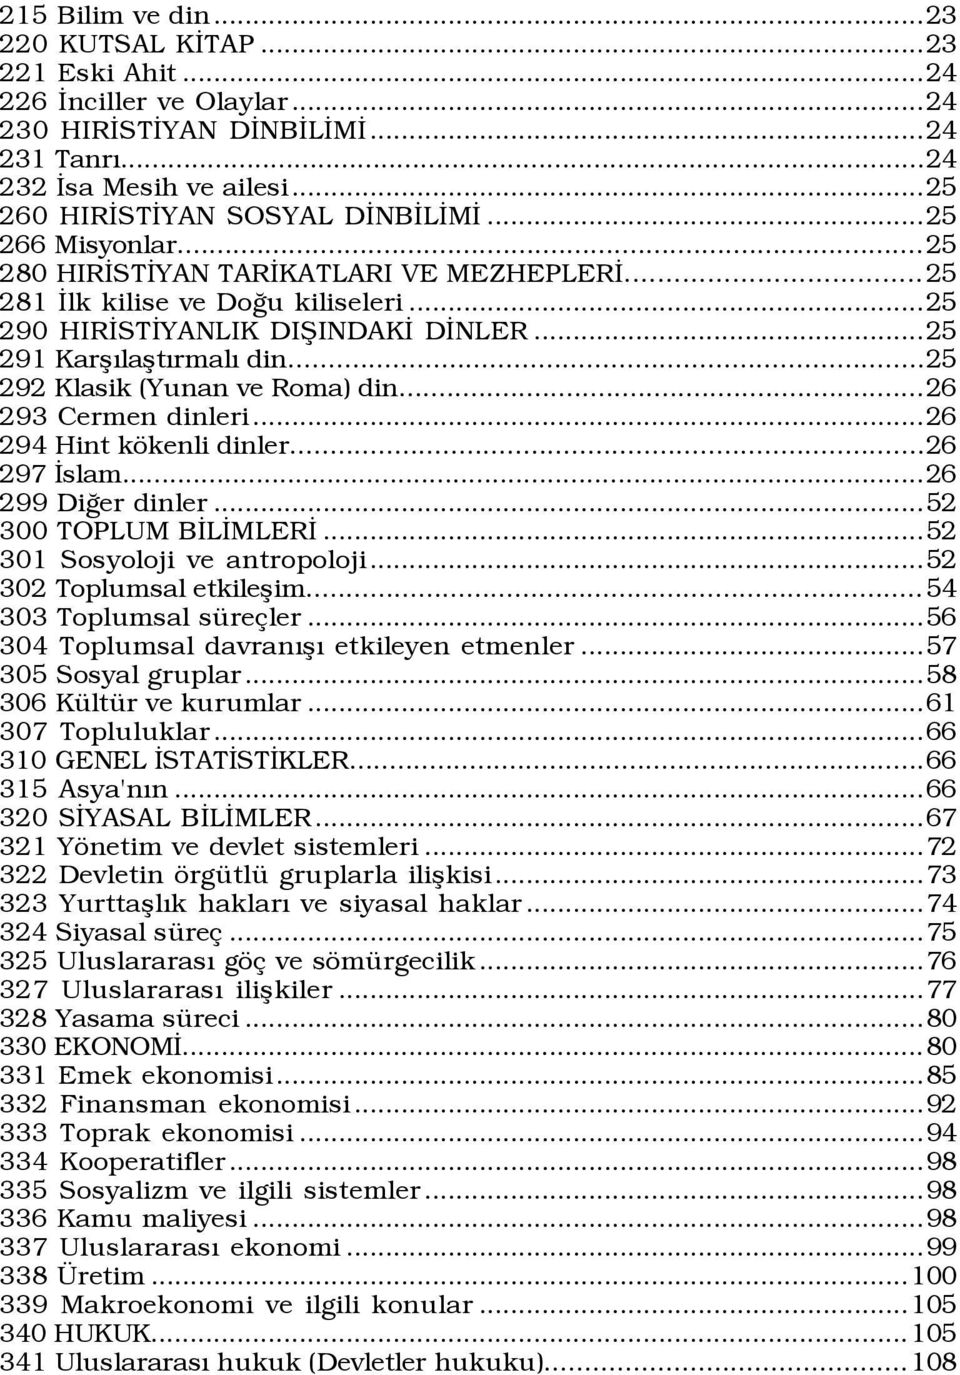 ..25 292 Klasik (Yunan ve Roma) din...26 293 Cermen dinleri...26 294 Hint kškenli dinler...26 297 Üslam...26 299 DiÛer dinler...52 300 TOPLUM BÜLÜMLERÜ...52 301 Sosyoloji ve antropoloji.